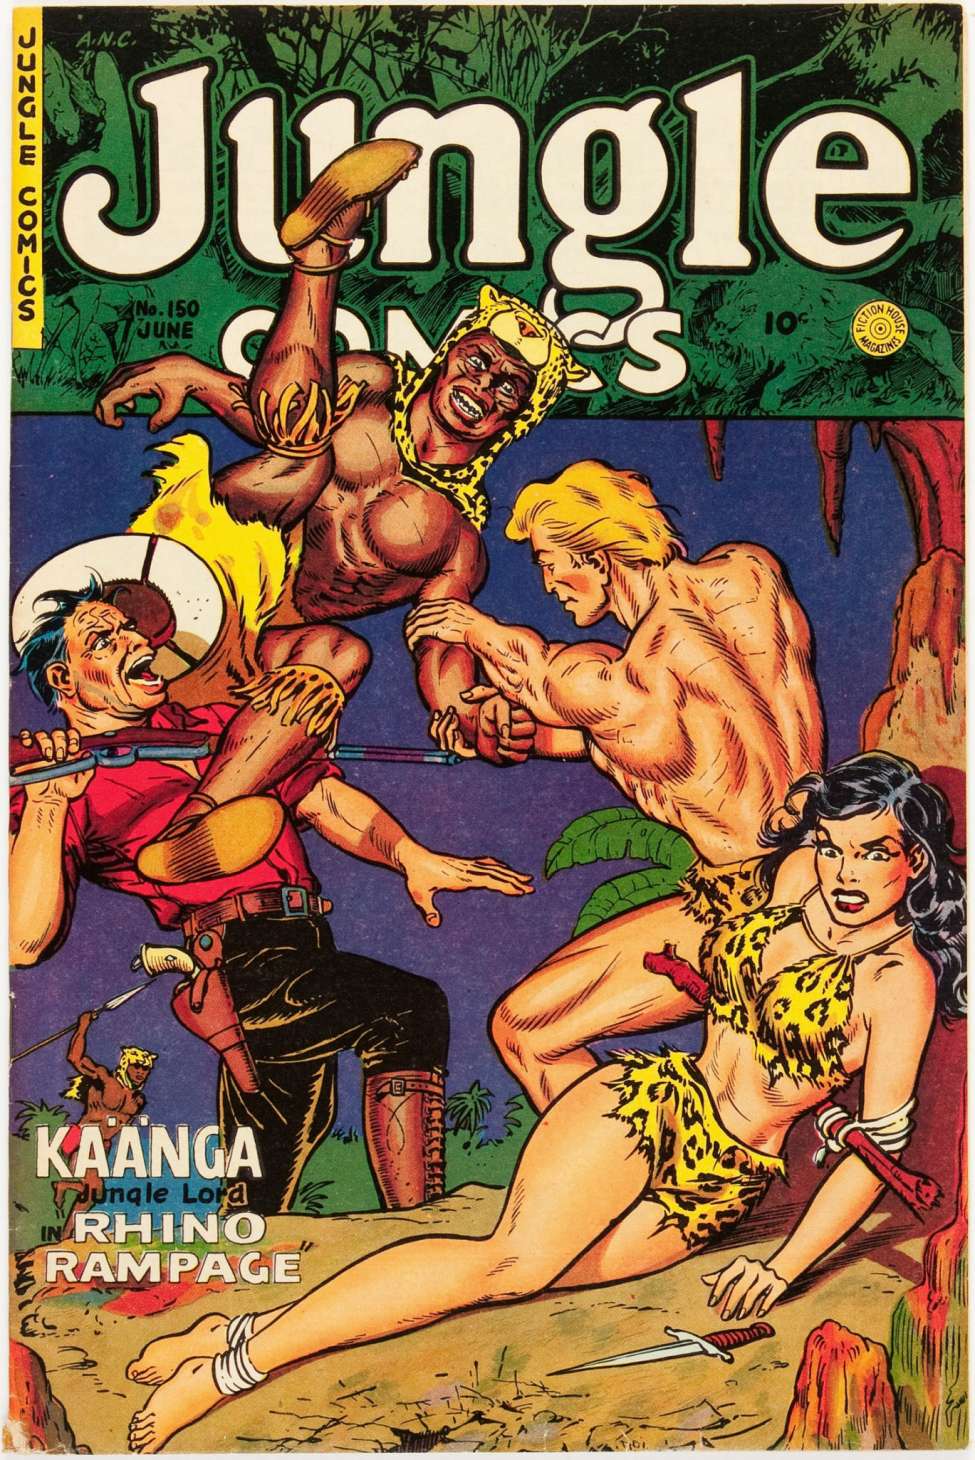 Book Cover For Jungle Comics 150 - Version 1